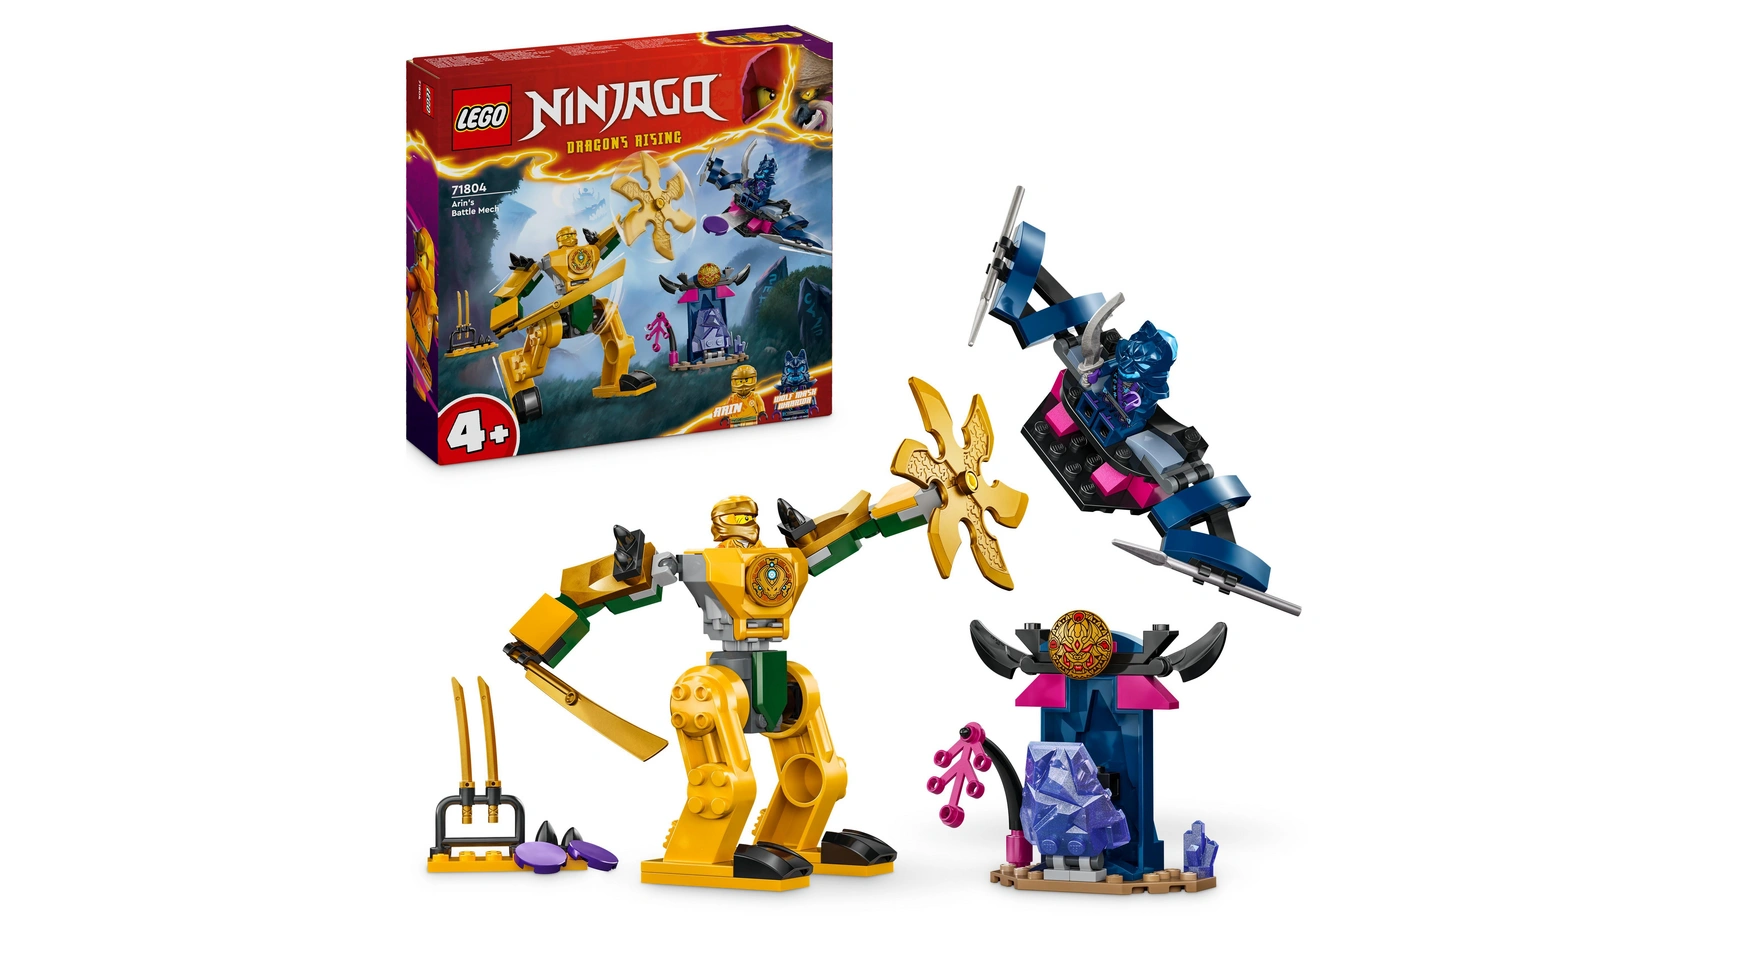 Lego NINJAGO Боевой мех Арина, игрушка ниндзя с фигурками героев